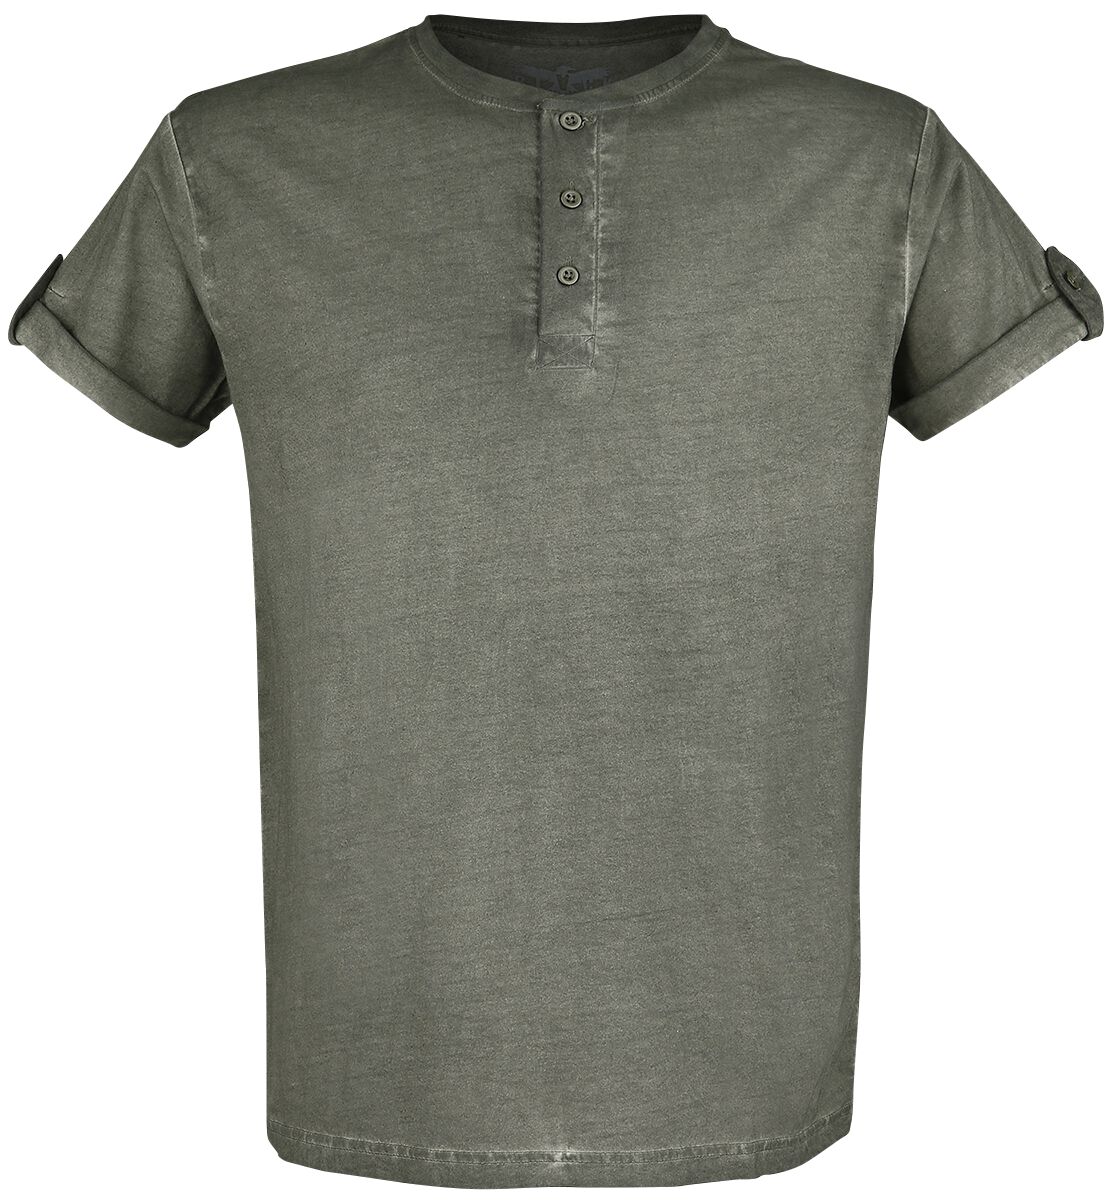 Black Premium by EMP grünes T-Shirt mit Knopfleiste und umgeschlagenen Ärmeln T-Shirt grün in XL